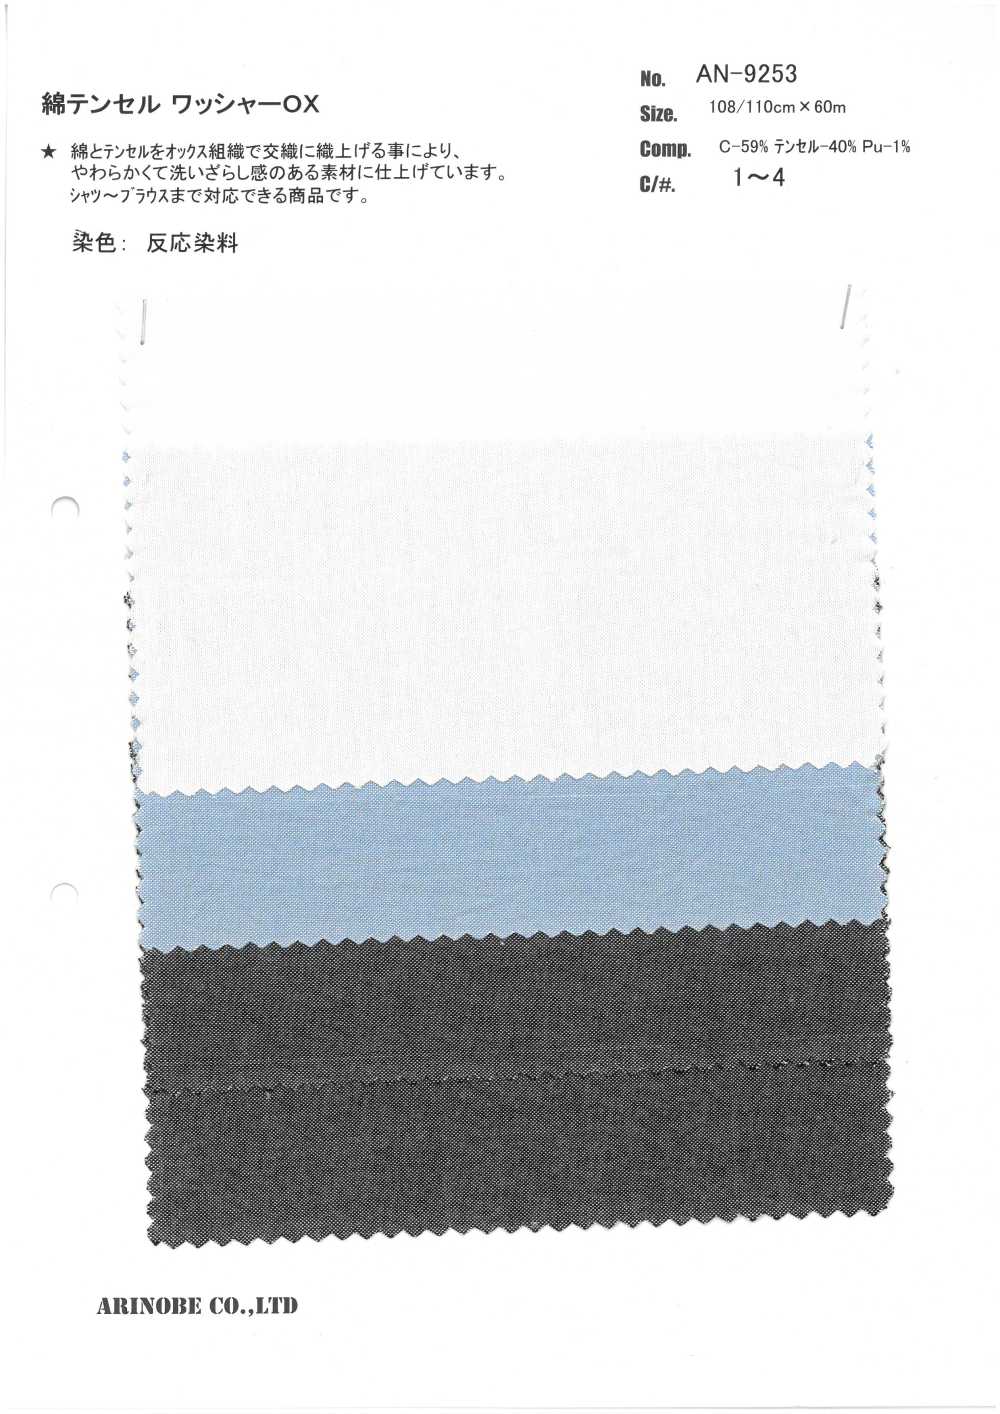 AN-9253 Coton / Tencel Laveuse Traitement OX[Fabrication De Textile] ARINOBE CO., LTD.